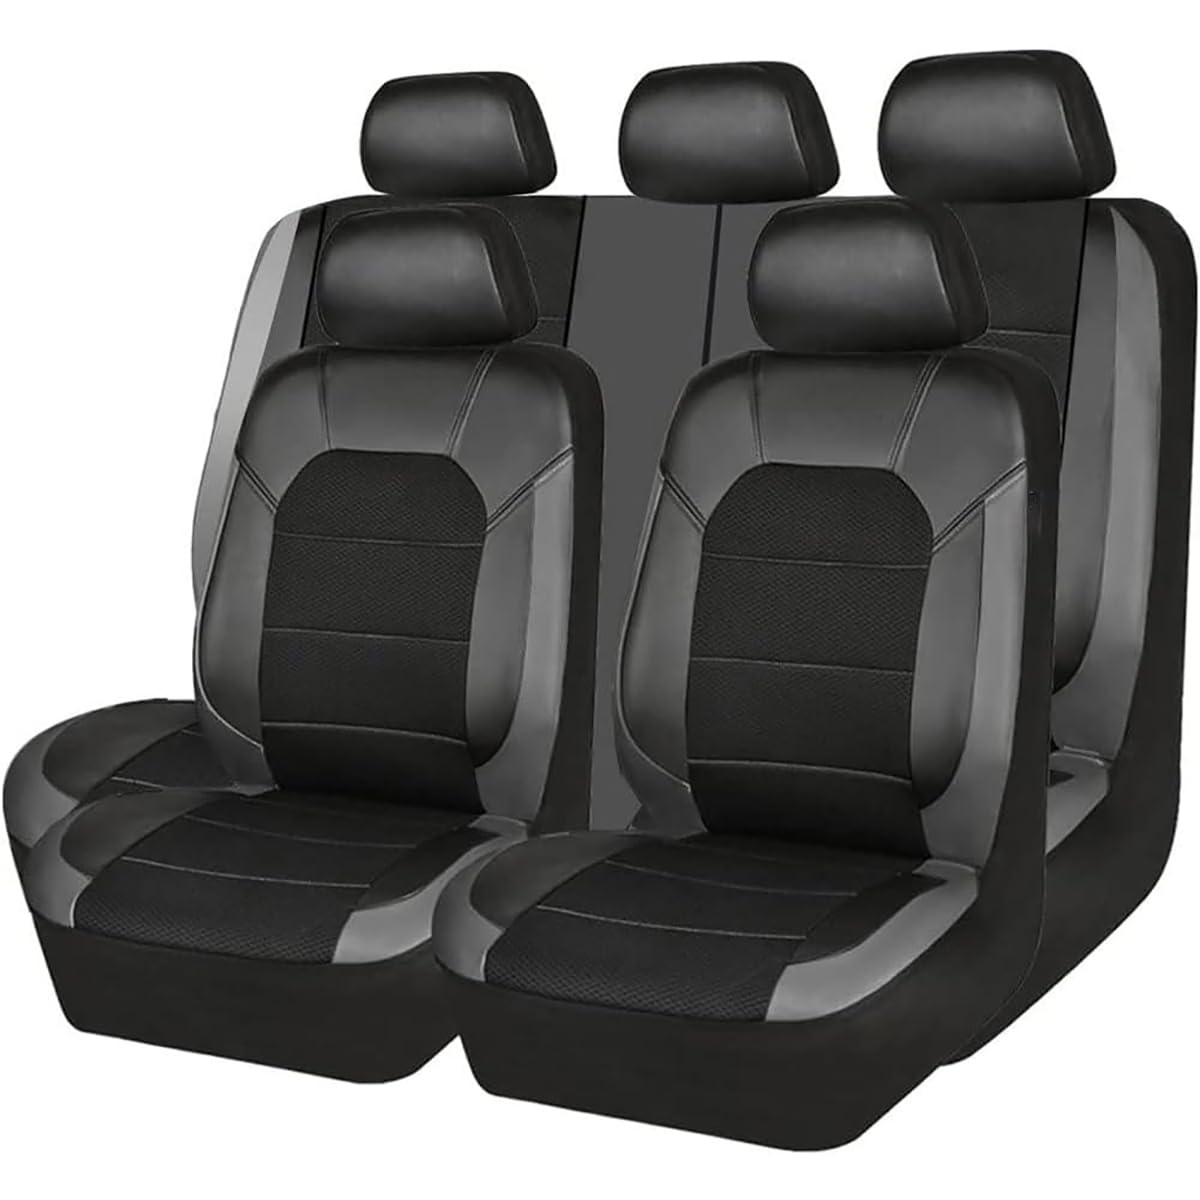 dzggs 5 Sitzplätze Universal Sitzbezügesets für Hyundai Santa Fe 2013, PU Leder Allwetter Atmungsaktiv Verschleißfest Autositzbezug, Innenraum Zubehör,D/Grey von dzggs